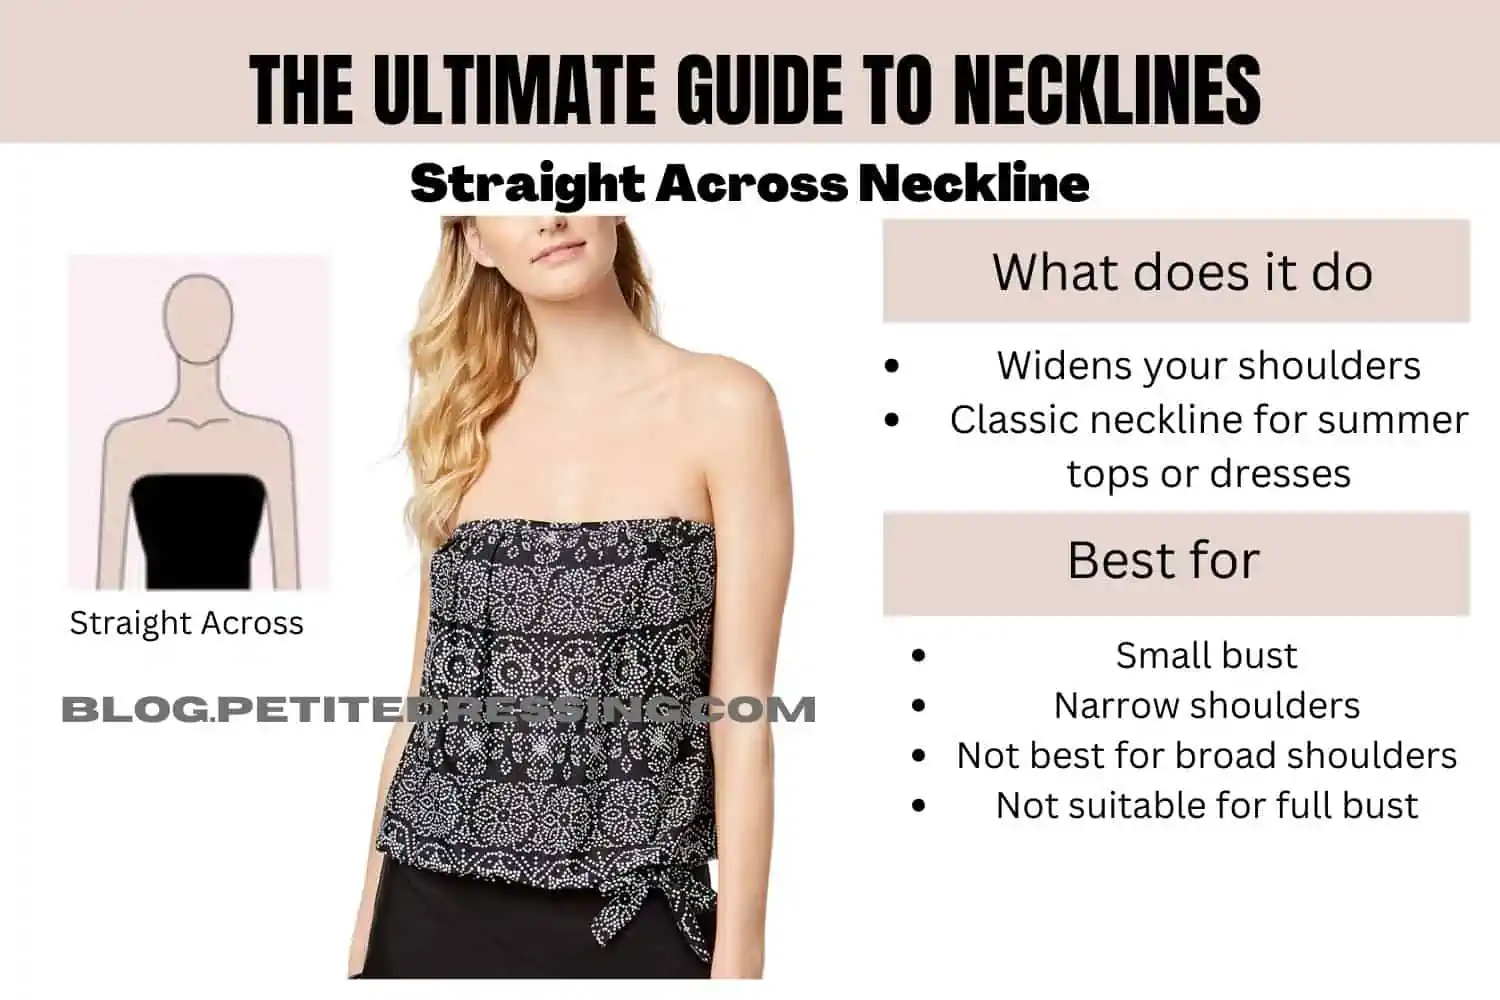 Neckline for Broad Shoulders